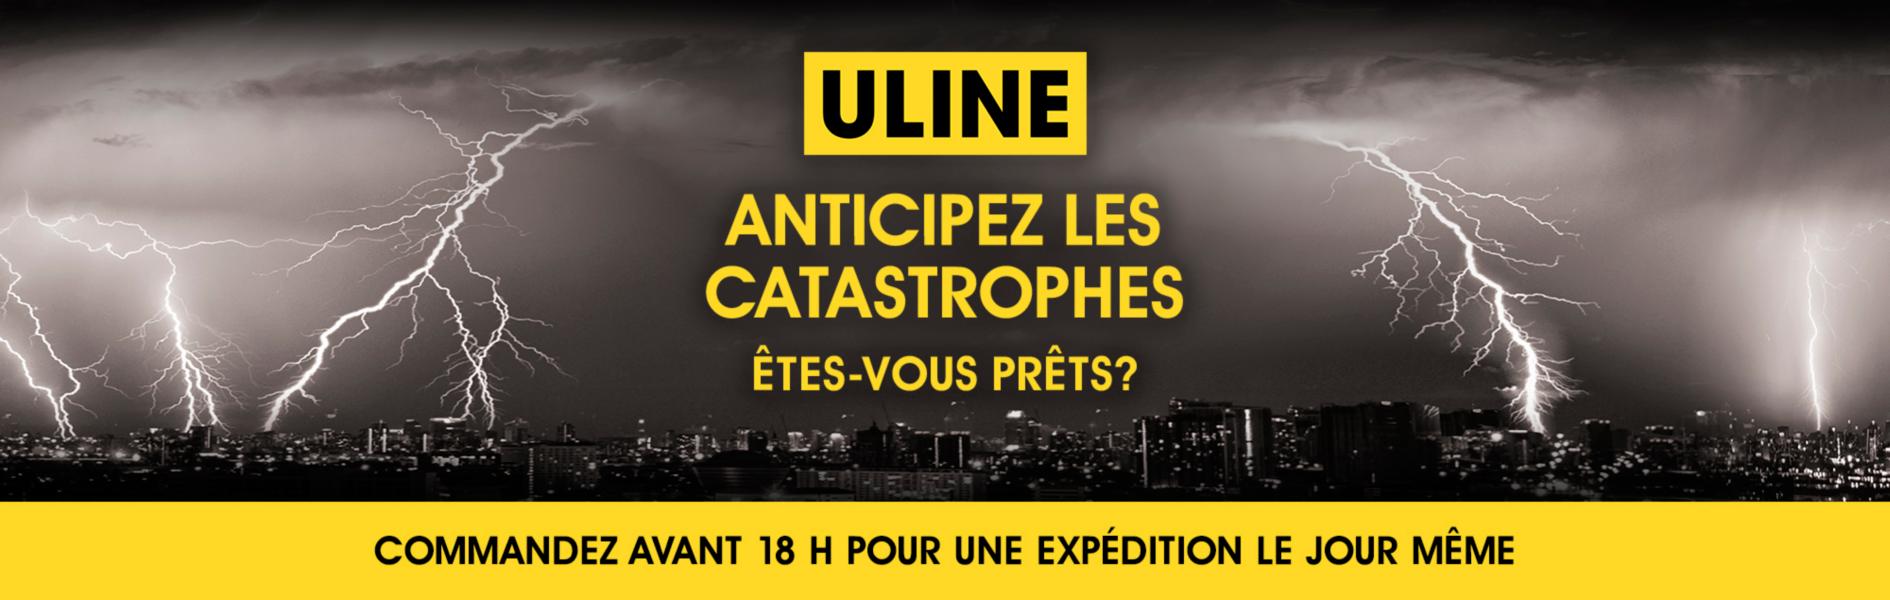 Uline : Anticipation des risques